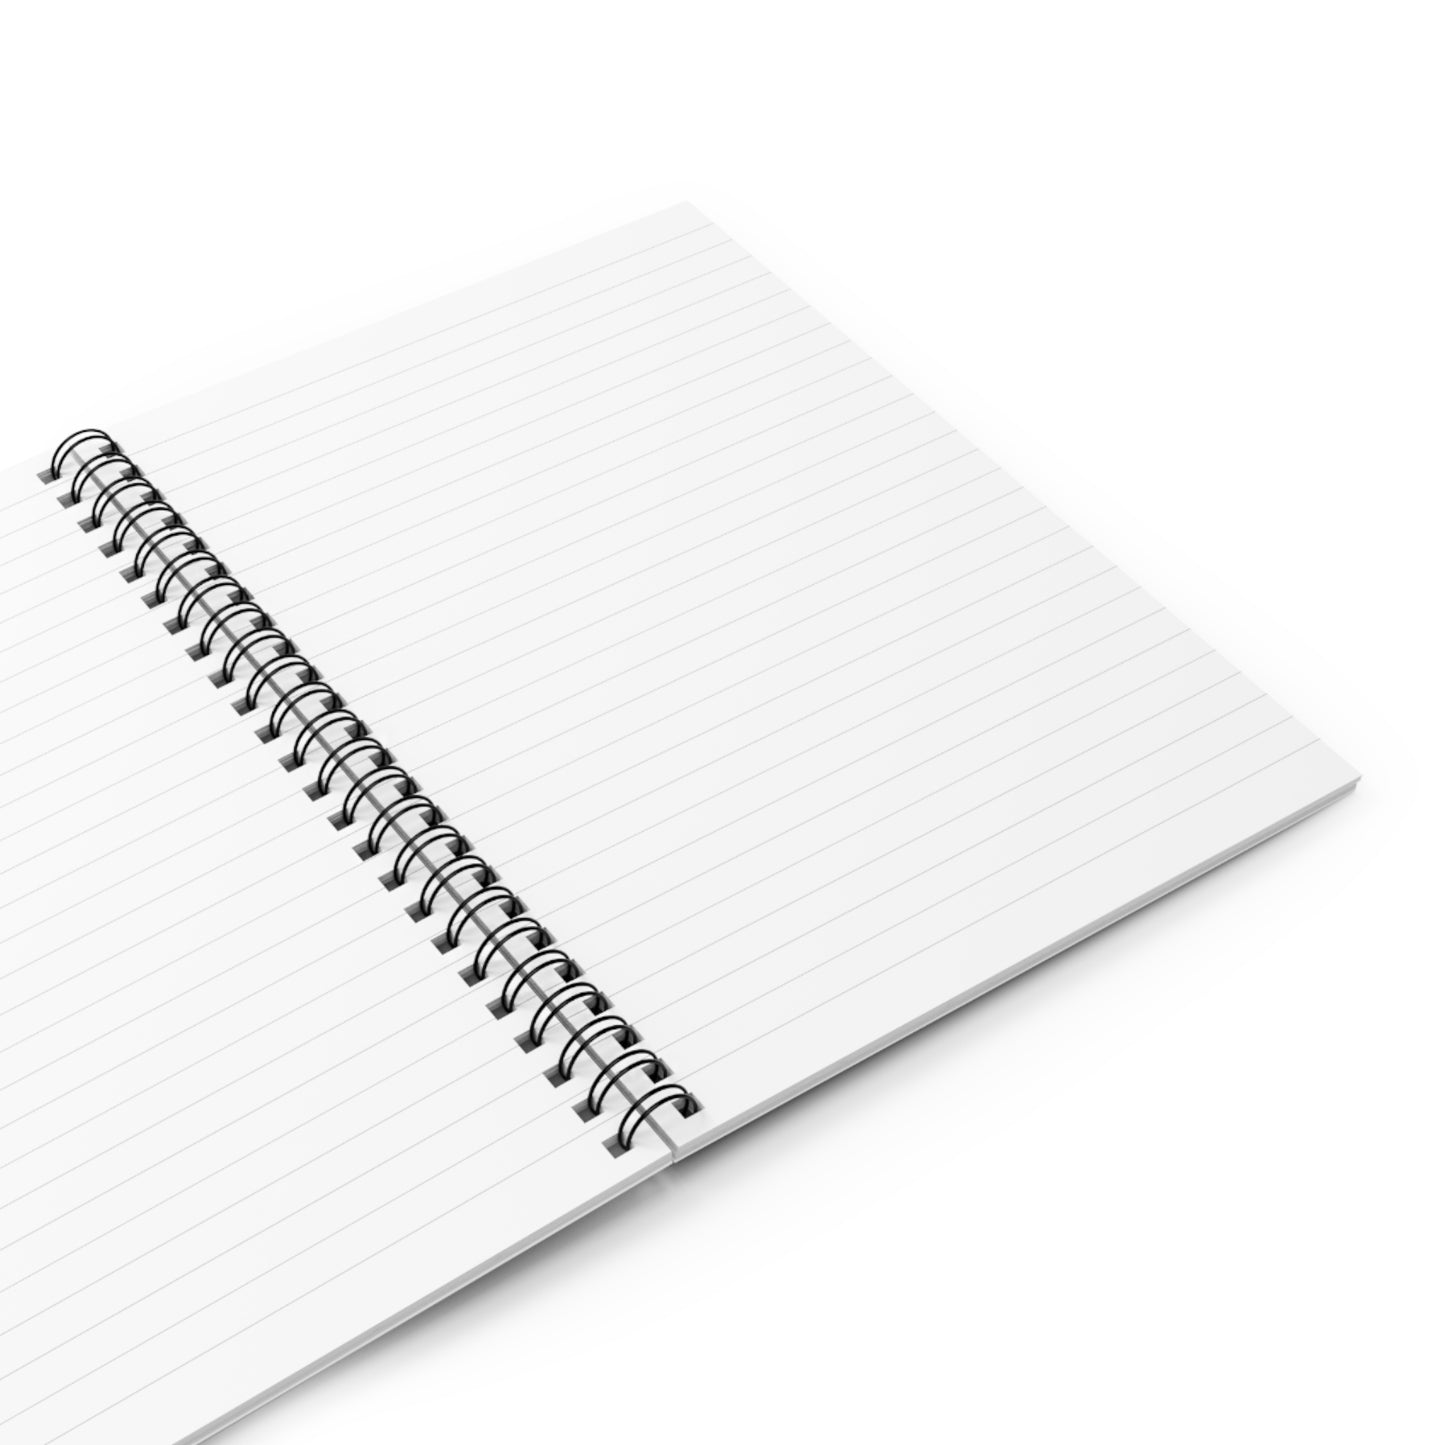 Sasha Journal Notebook